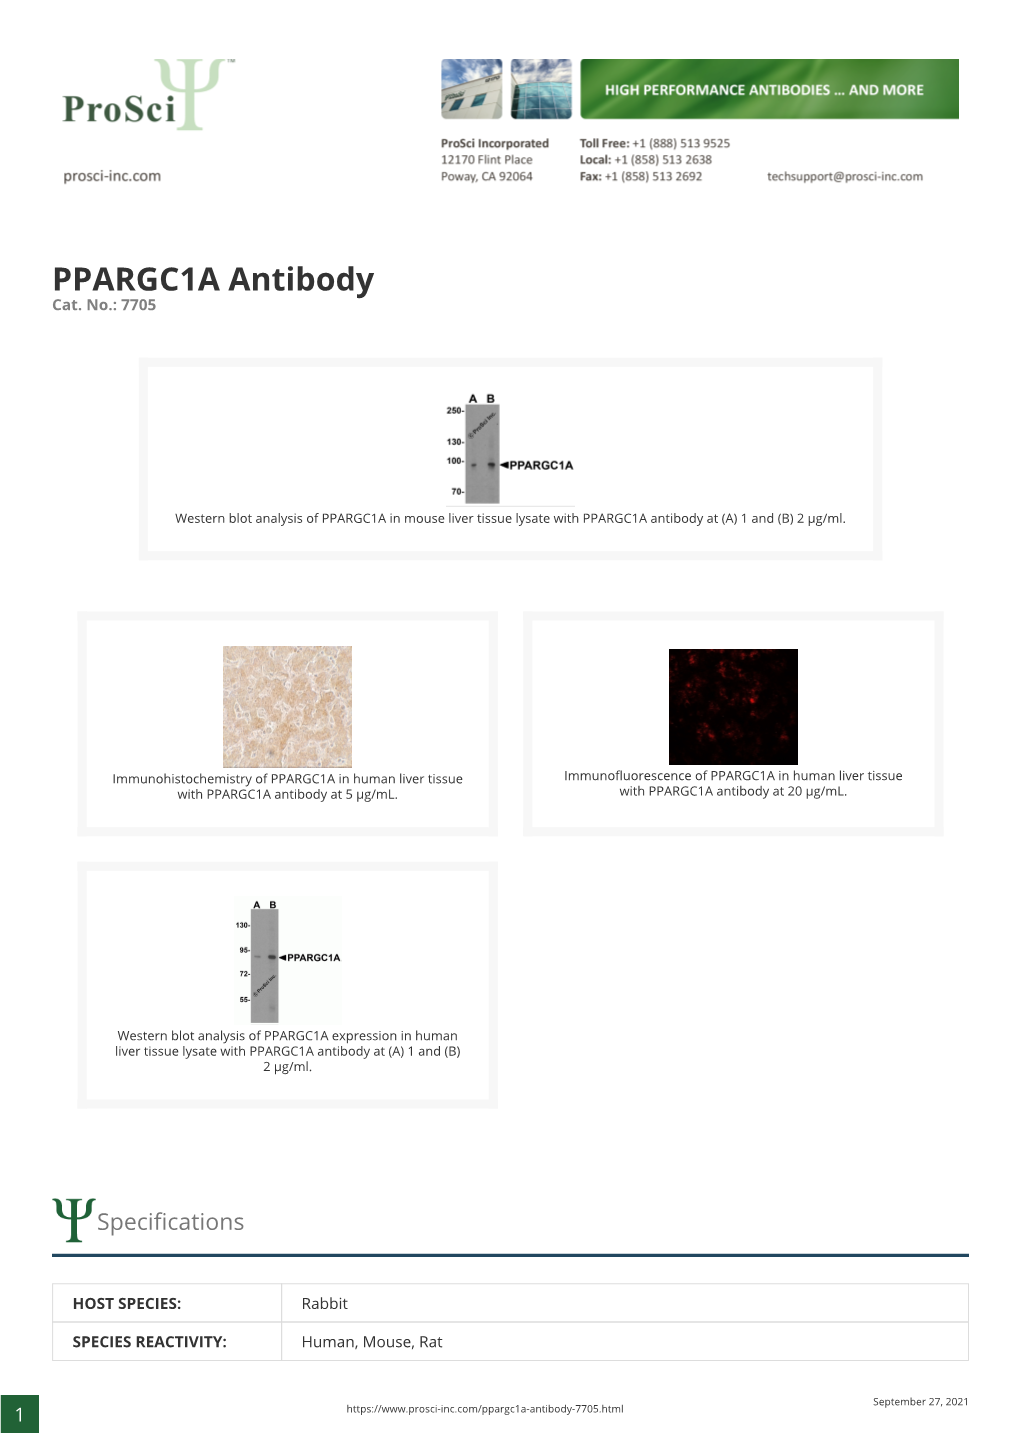 PPARGC1A Antibody Cat